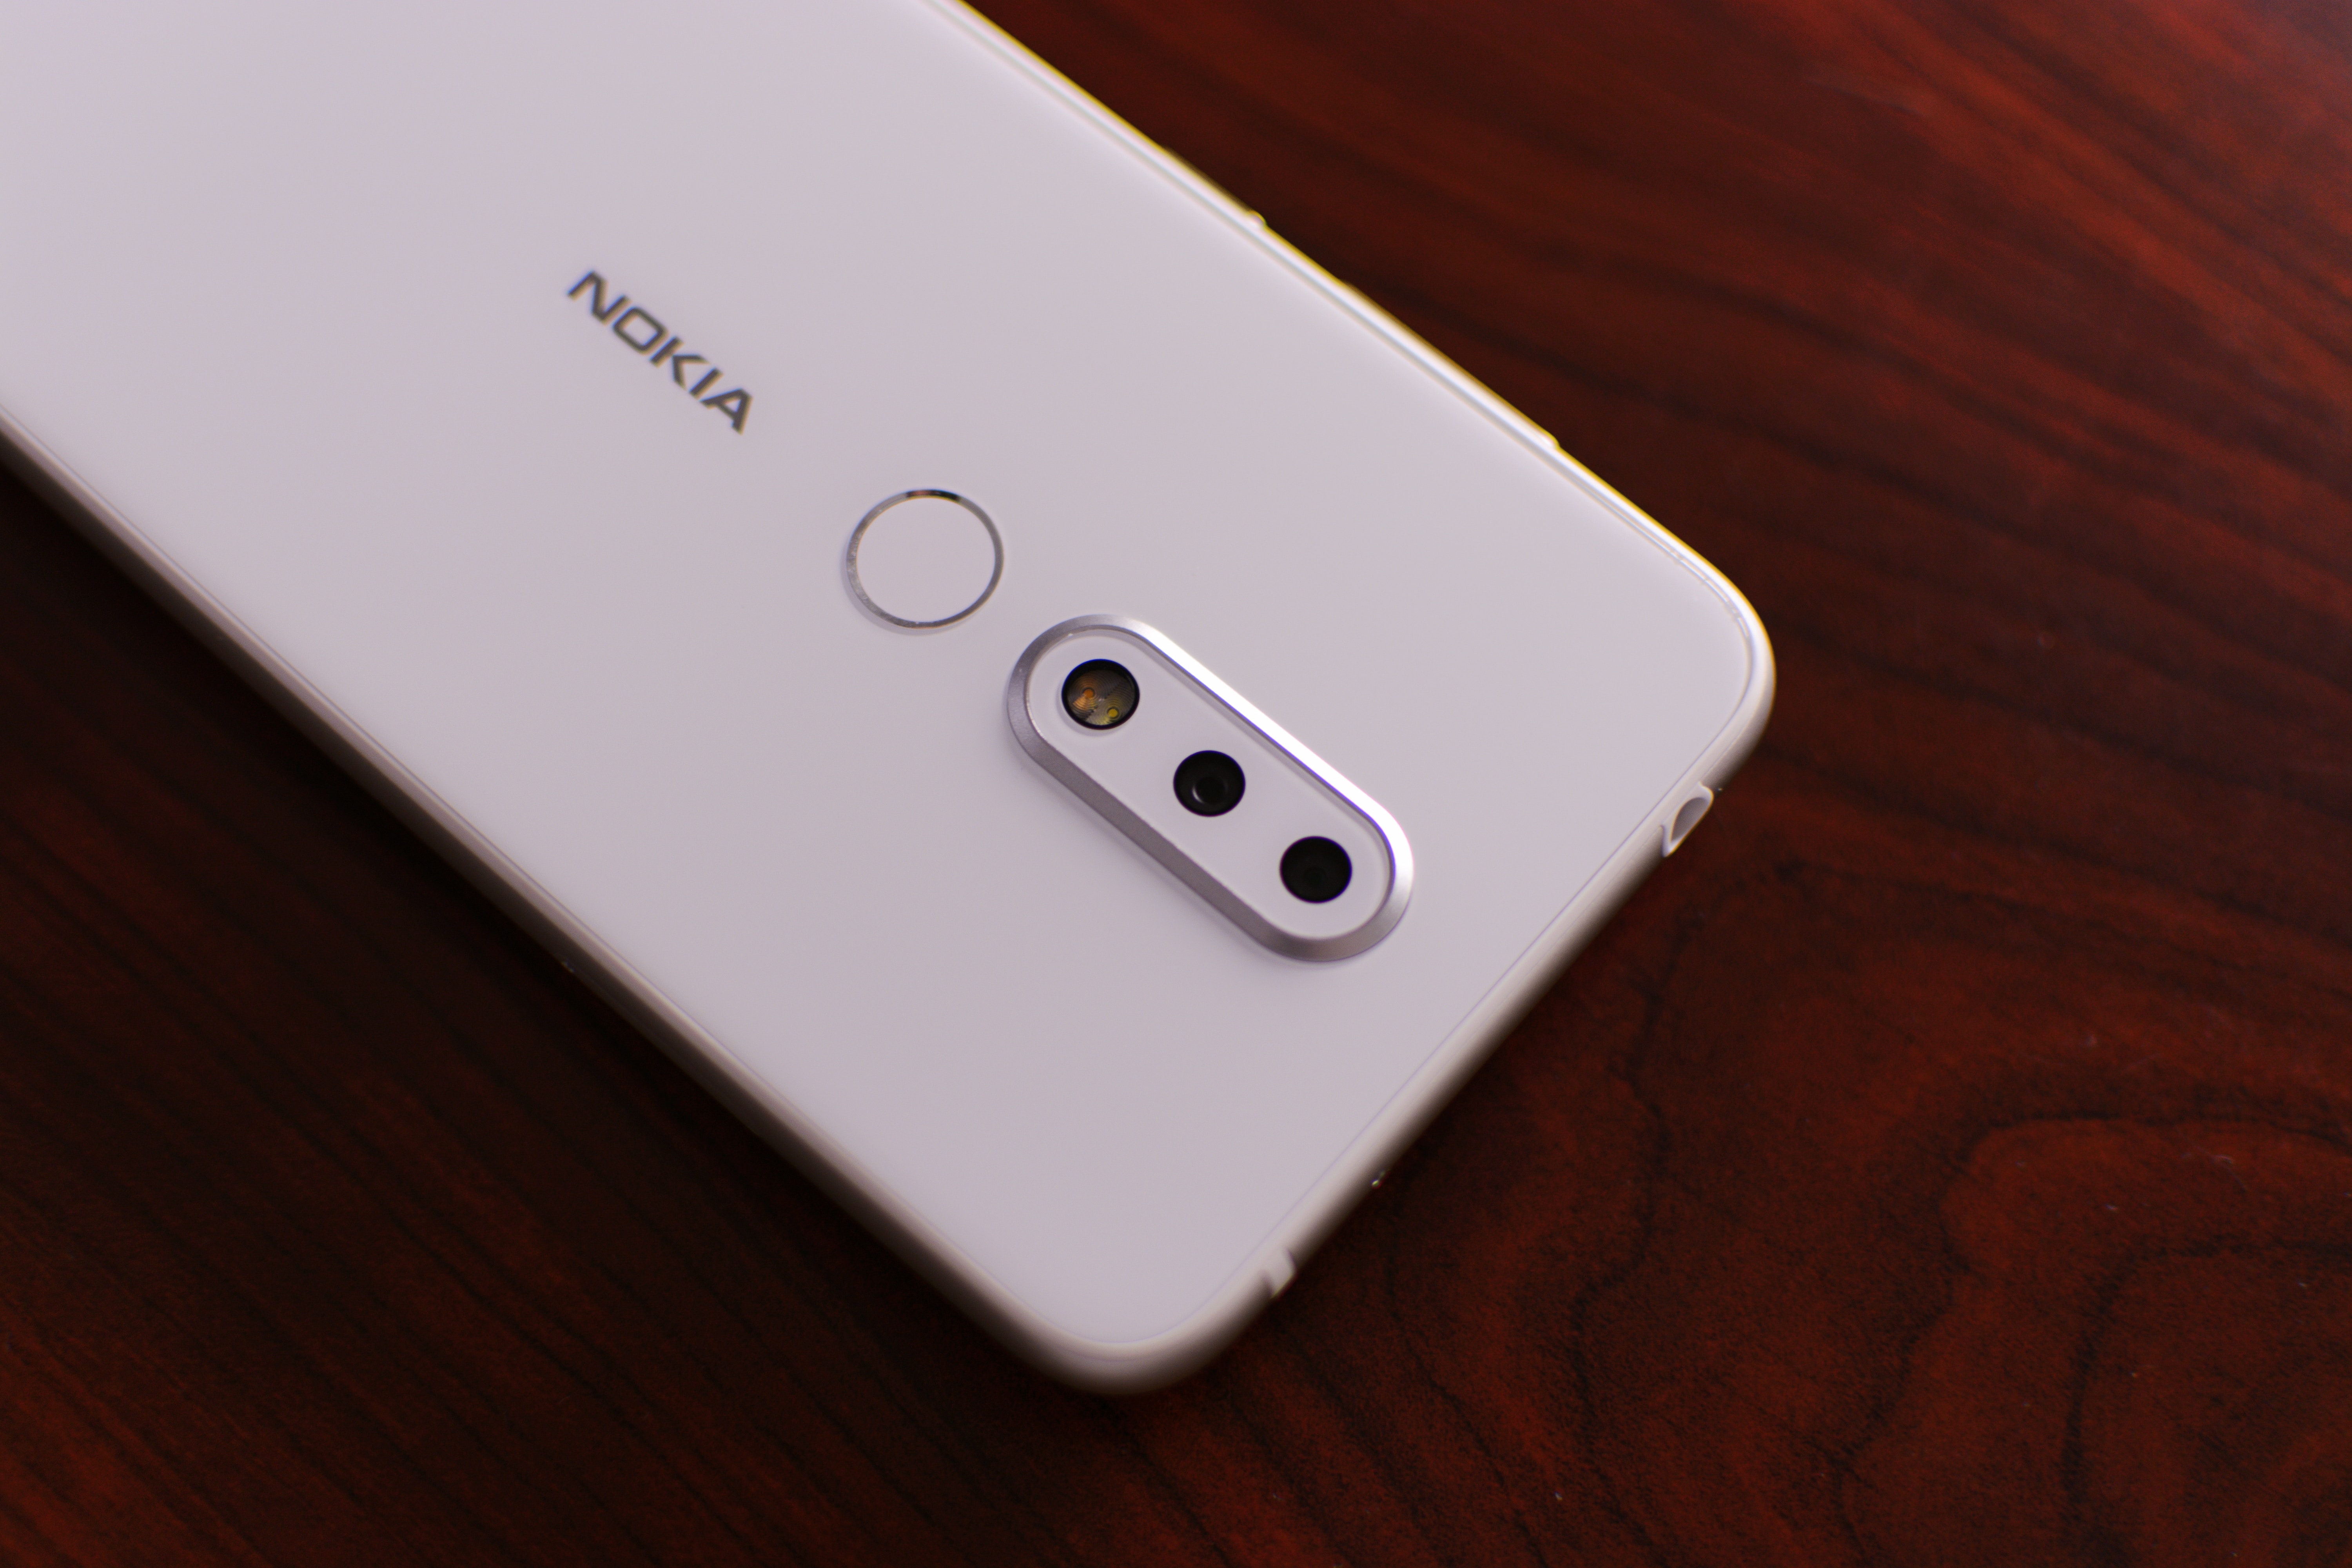 Nokia Bakal Luncurkan Ponsel Baru pada 5 Desember 2019